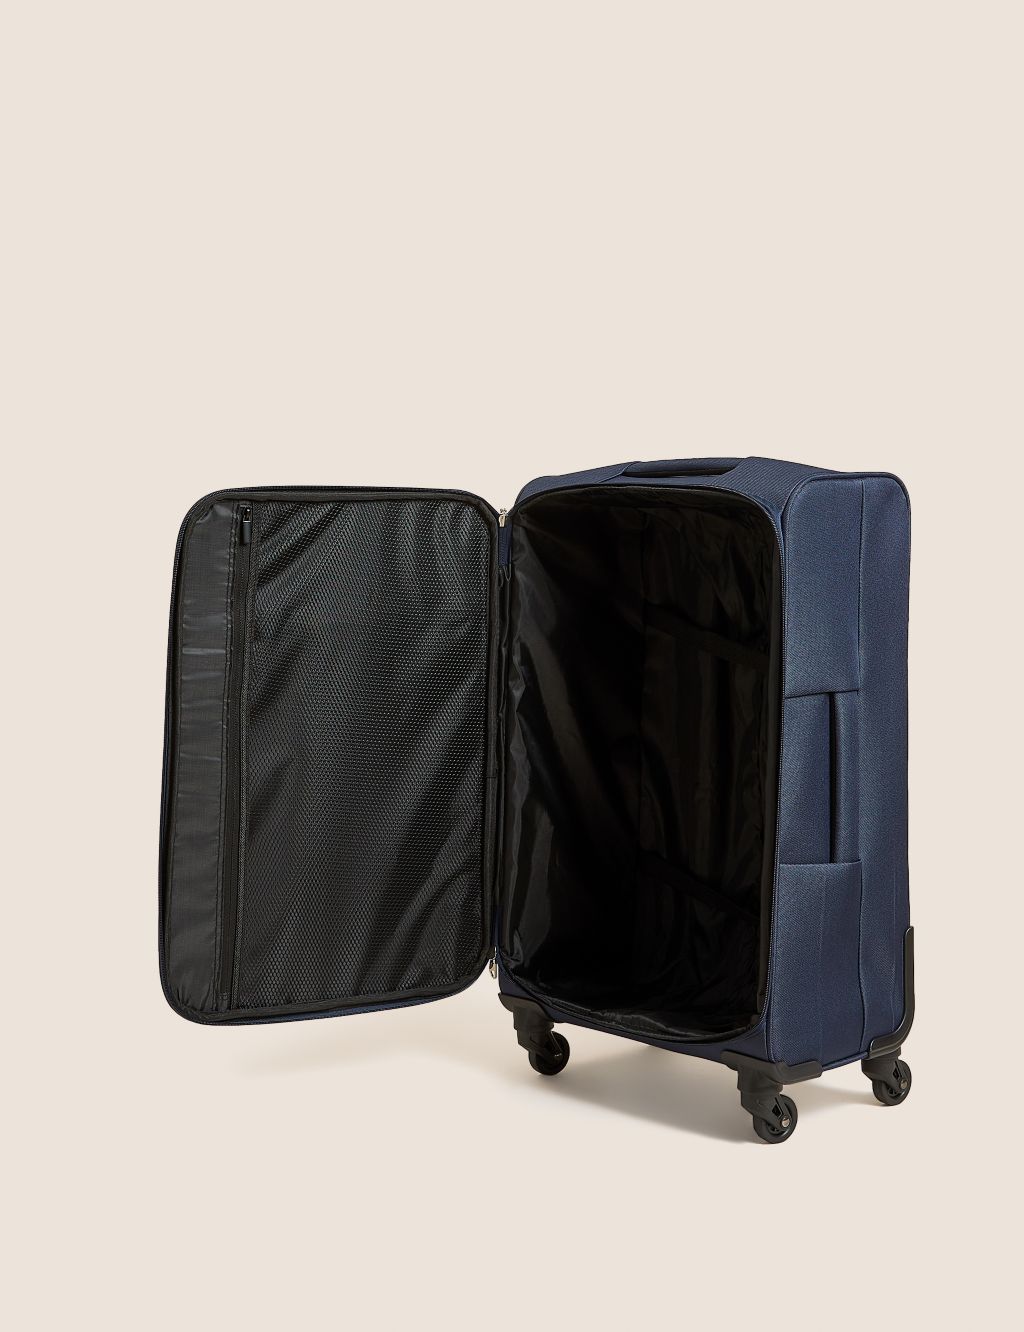 Palma 4 Wheel Soft Medium Suitcase image 6